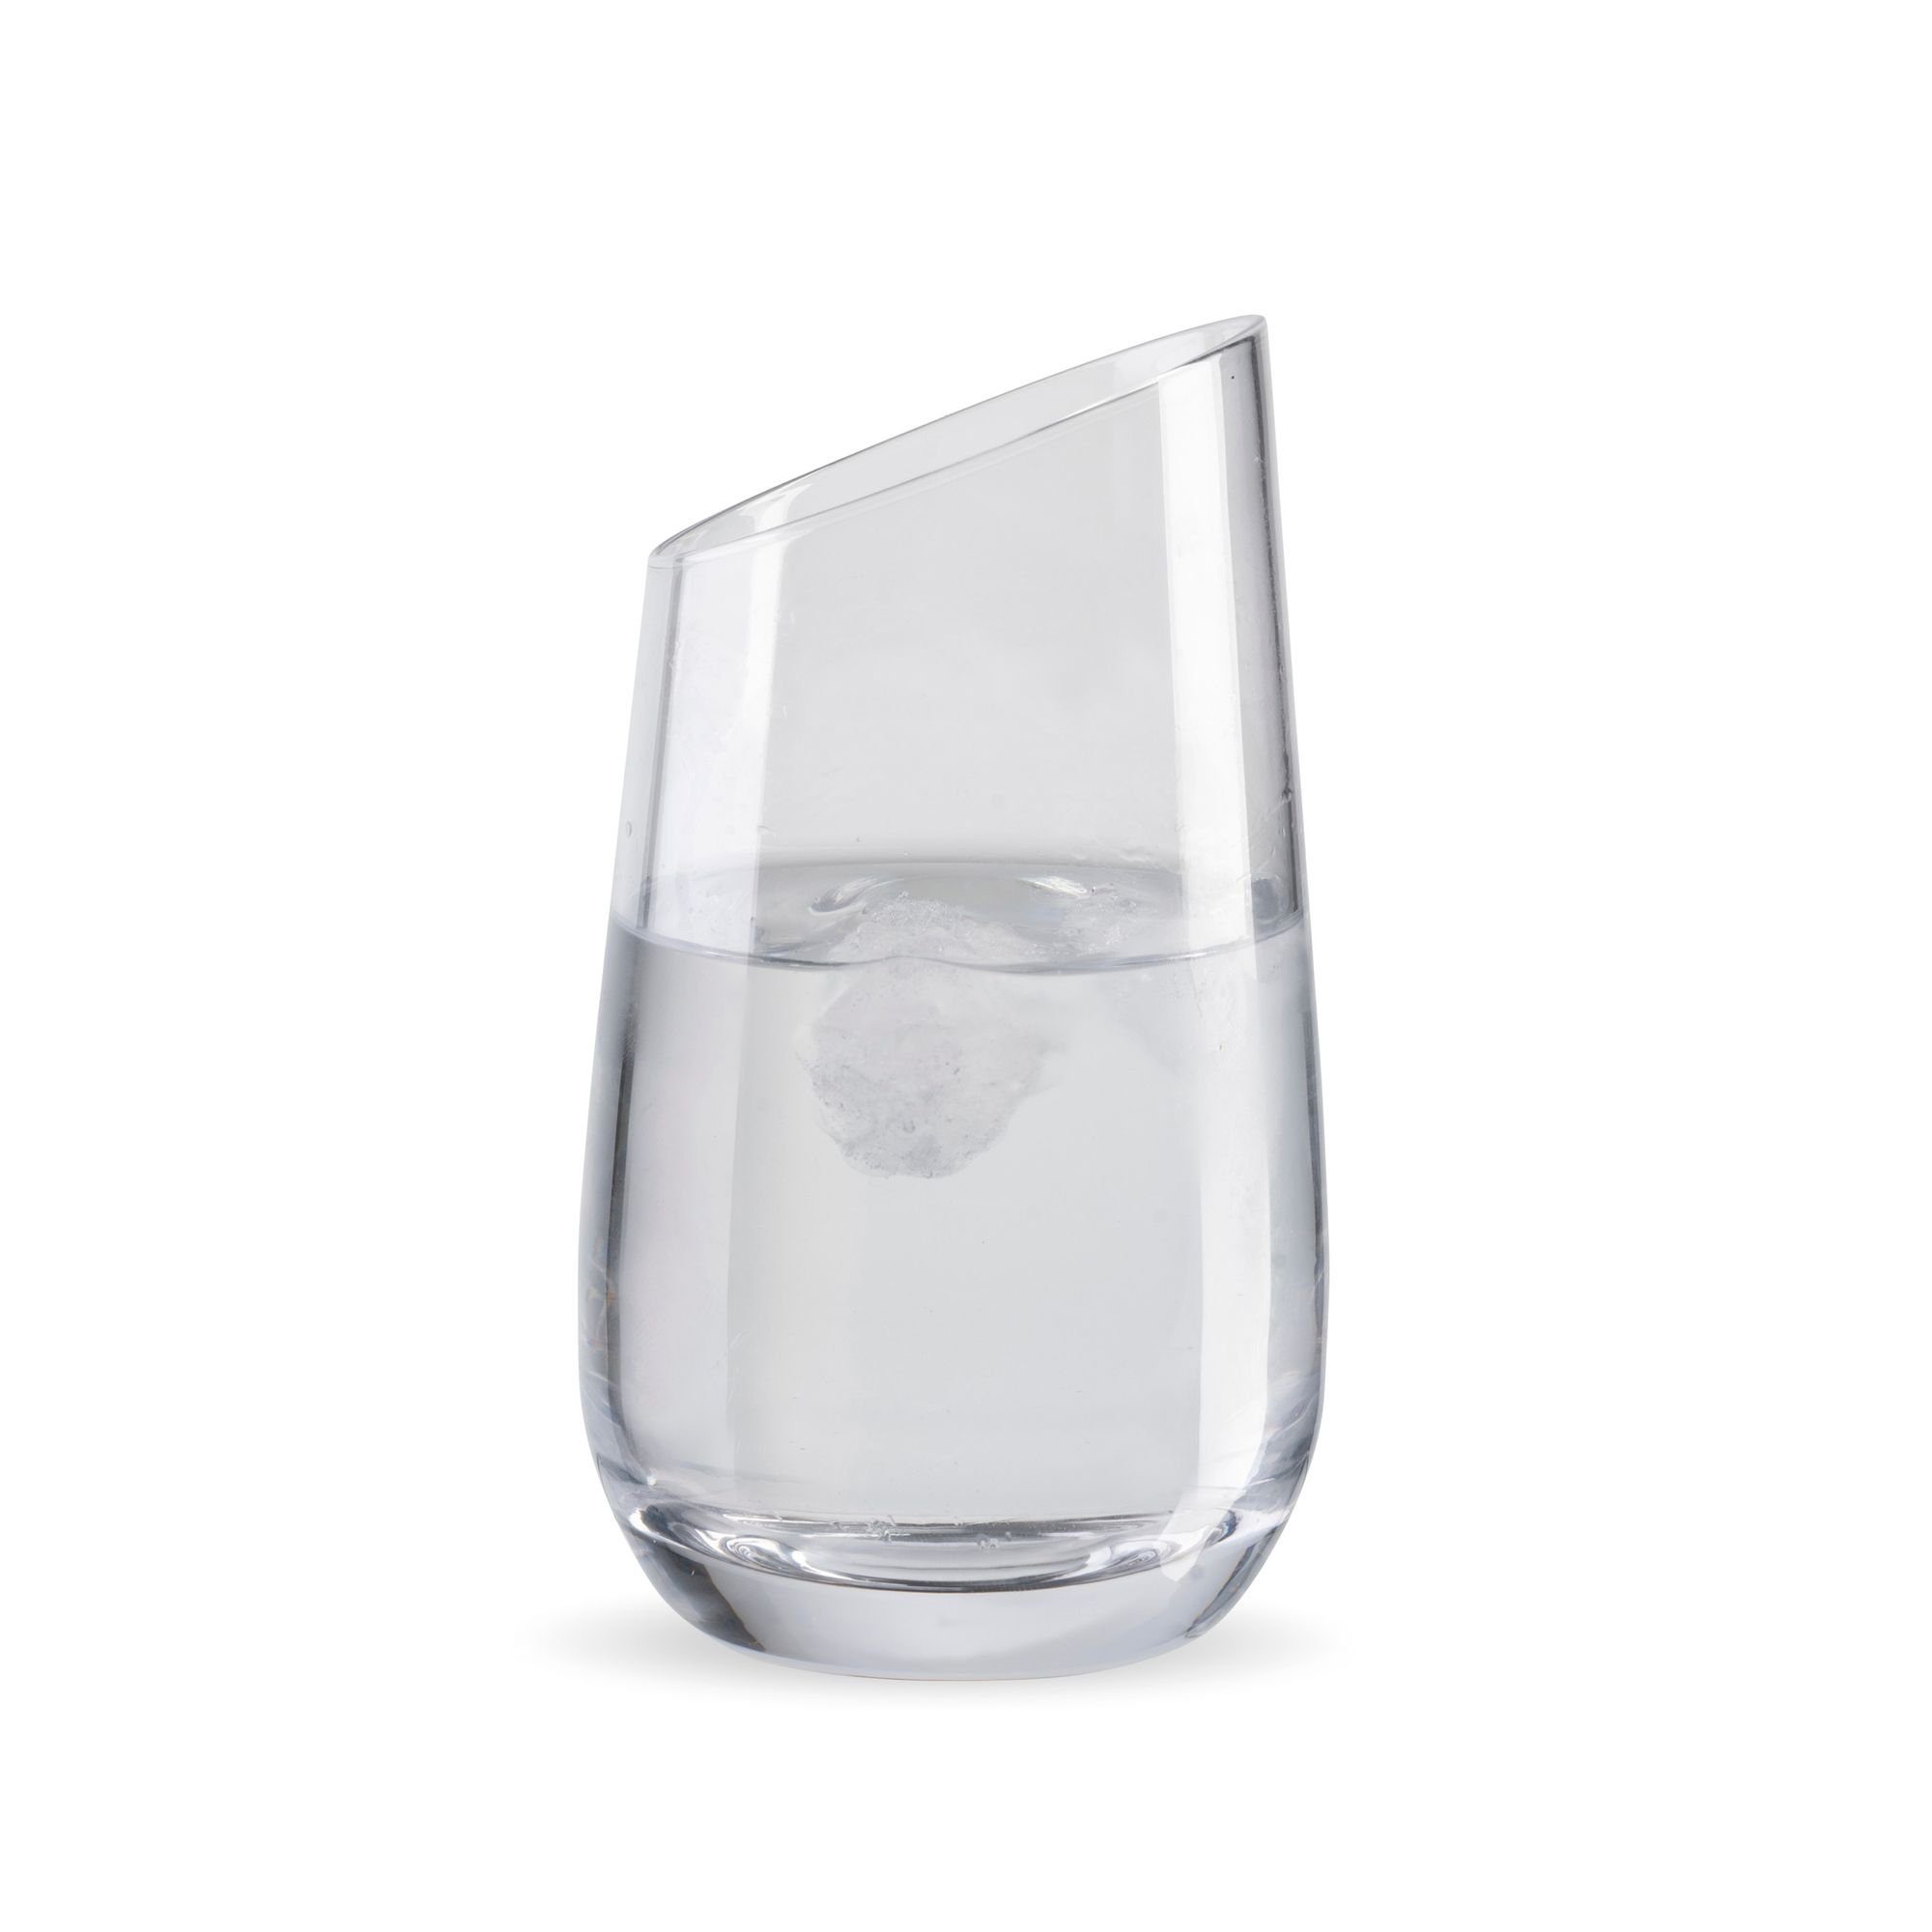 Living besondere Longdrink Wertmann-living mit Wertmann Gläser Form Glas Rand 2er Set - schrägem